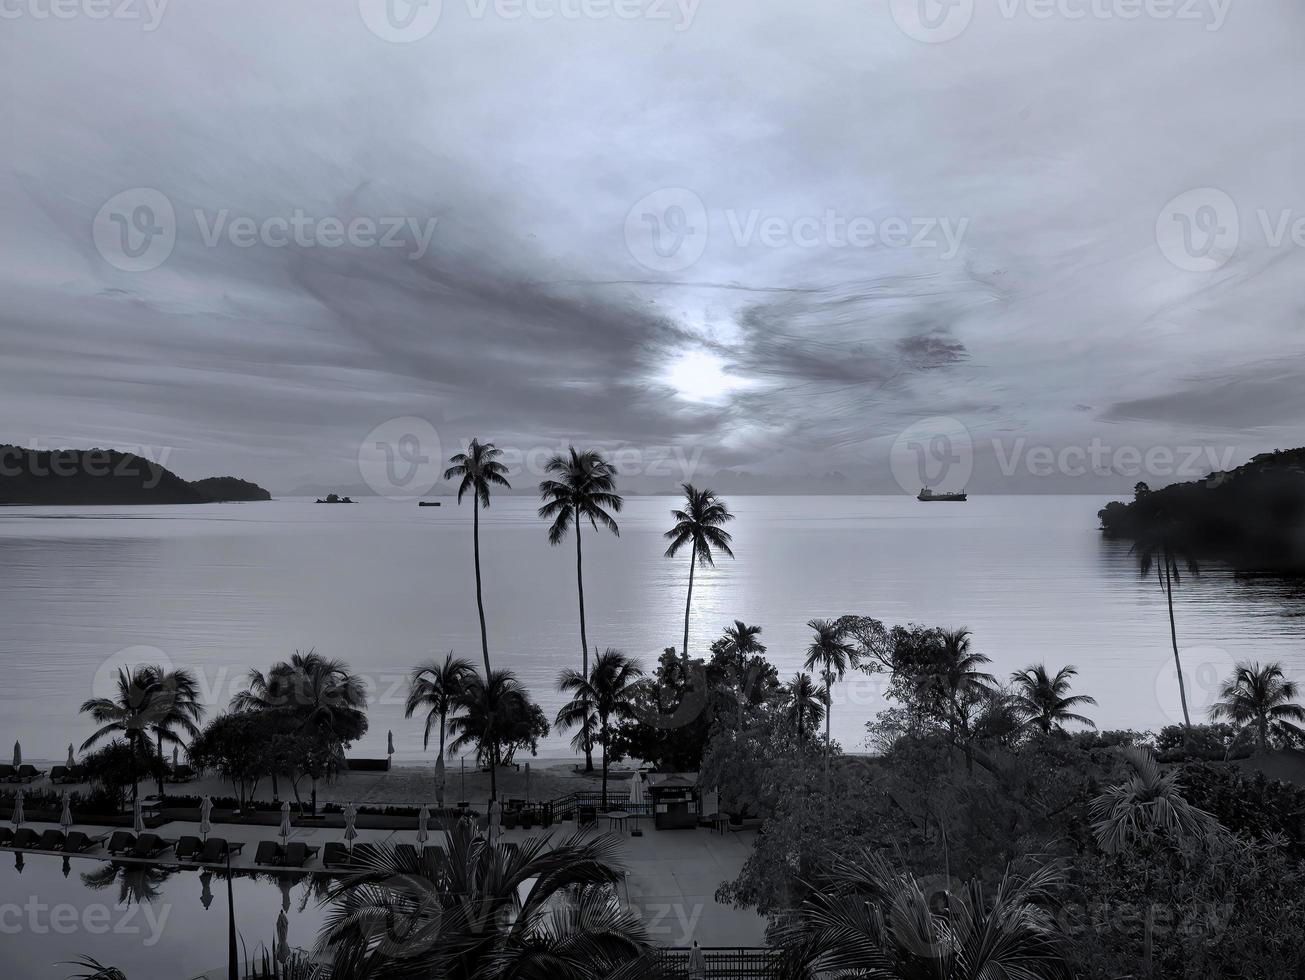 fondo de pantalla en blanco y negro de un pacífico amanecer, puesta de sol,  paisaje marino y cielo oceánico con silueta de coco en primer plano  12332072 Foto de stock en Vecteezy